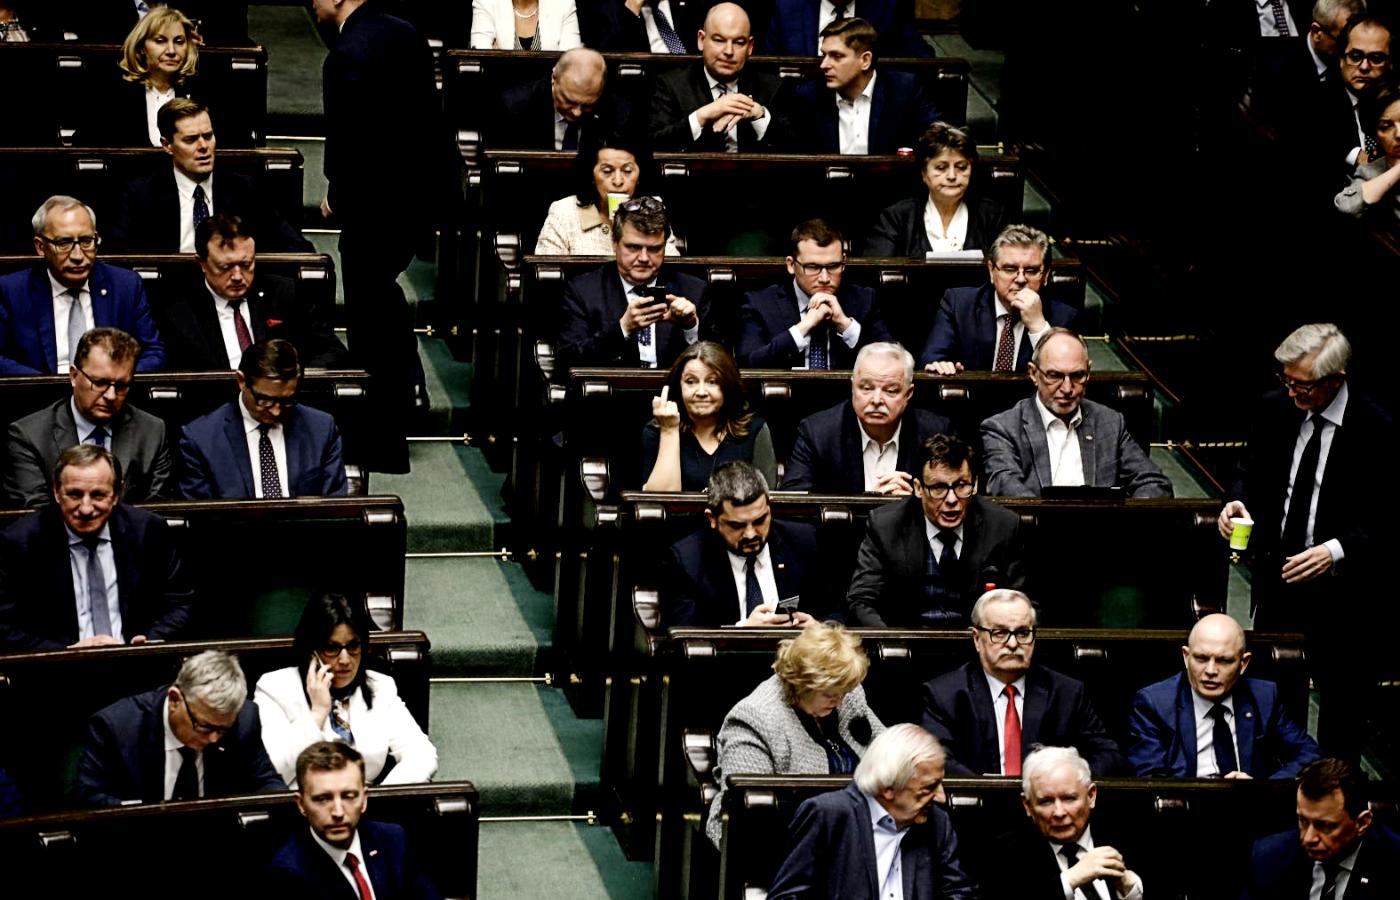 Po wygranym głosowaniu posłanka Joanna Lichocka pokazuje trzeci palec posłom opozycji.